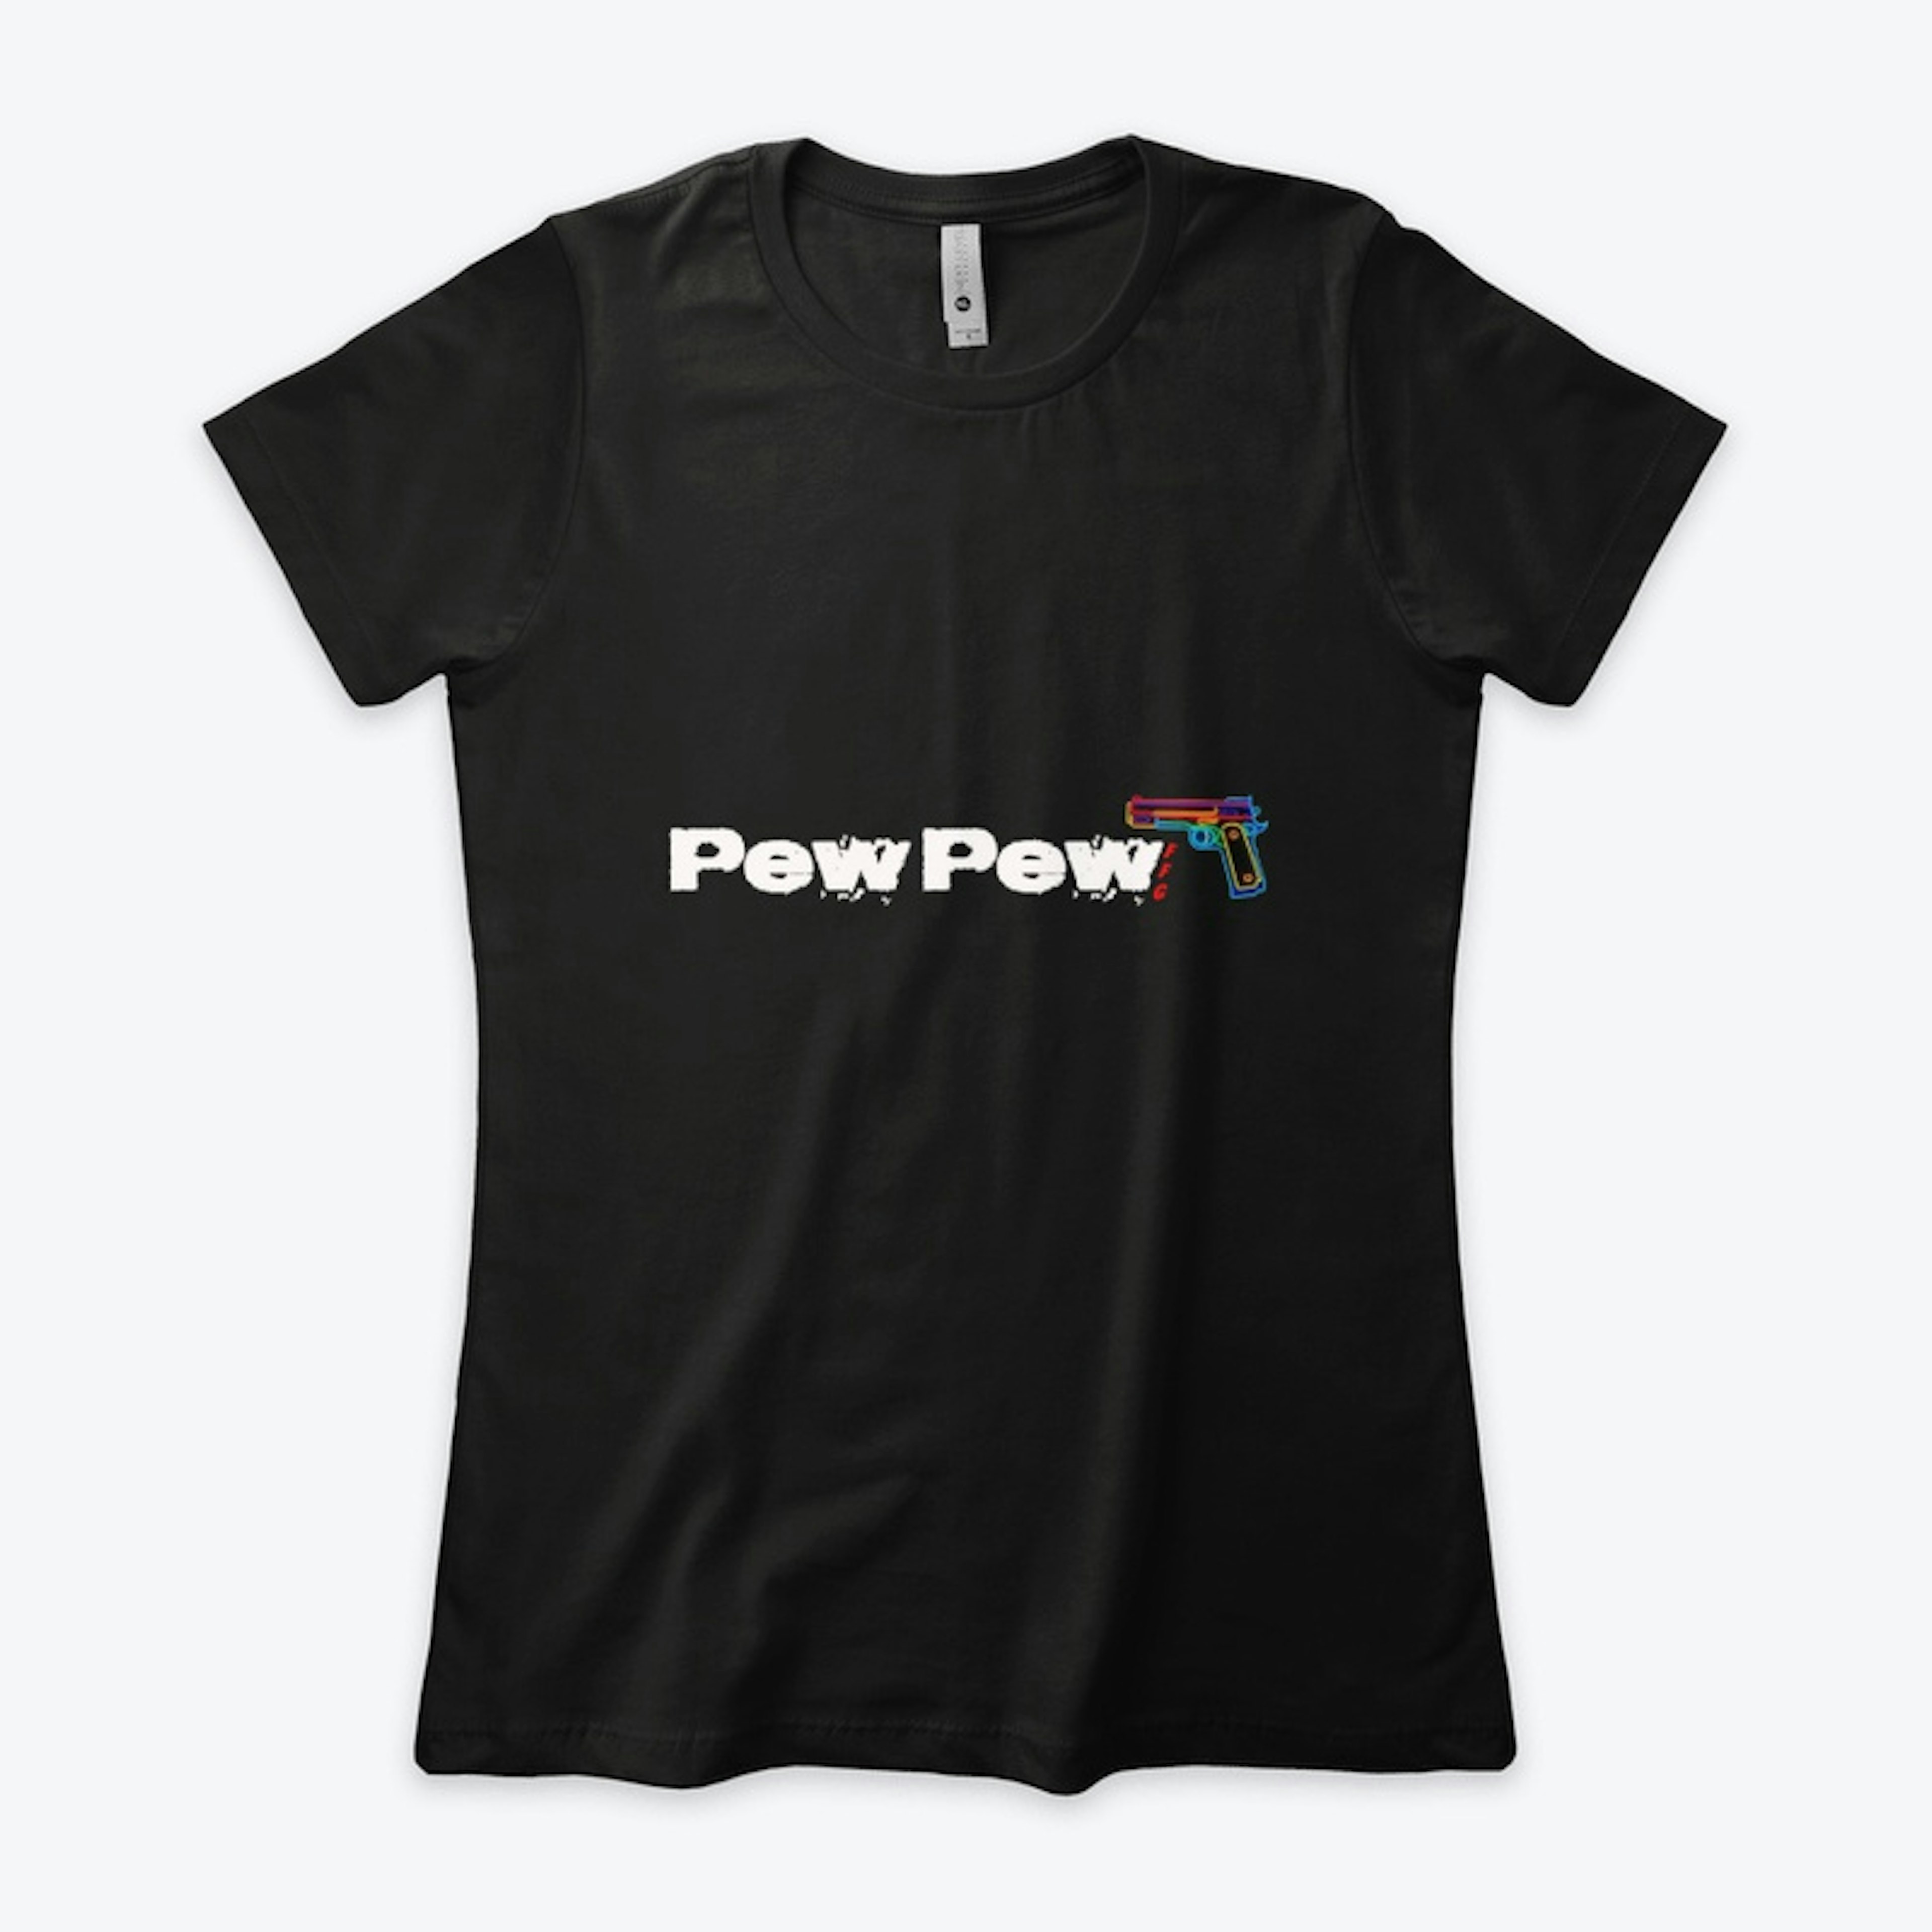 Pew Pew on dark